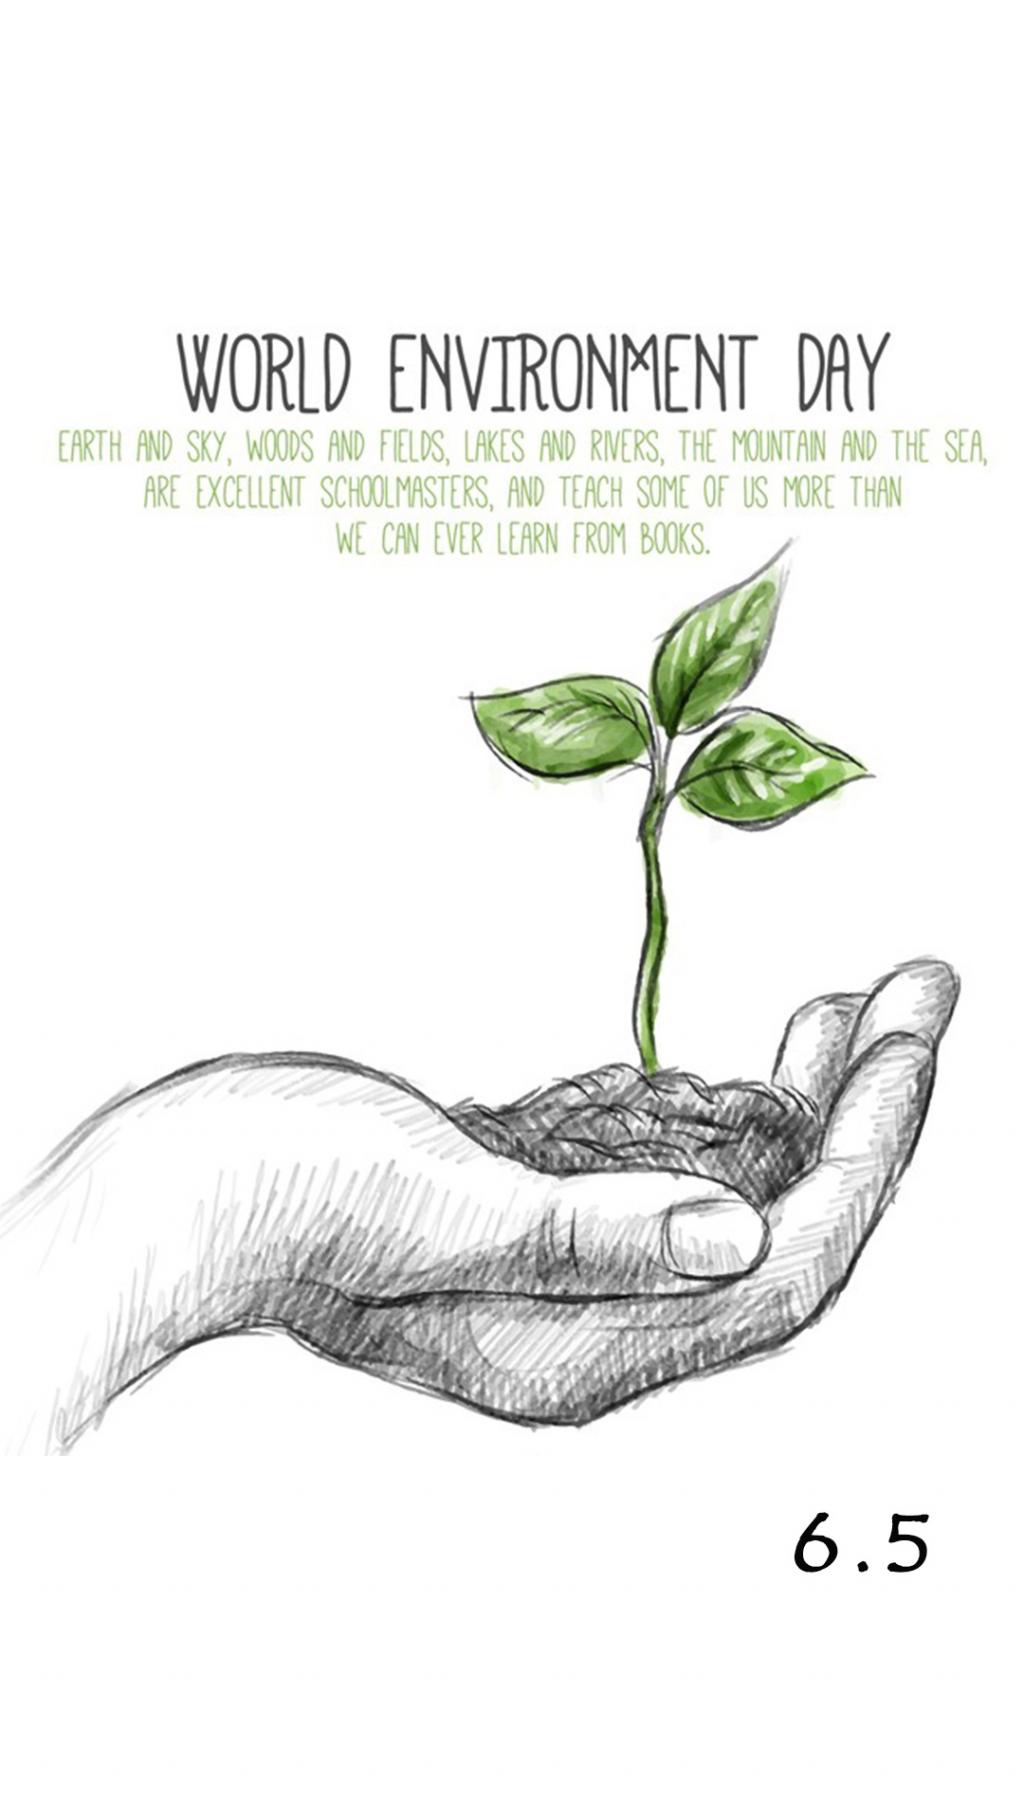 世界环境日小树苗英文版宣传海报